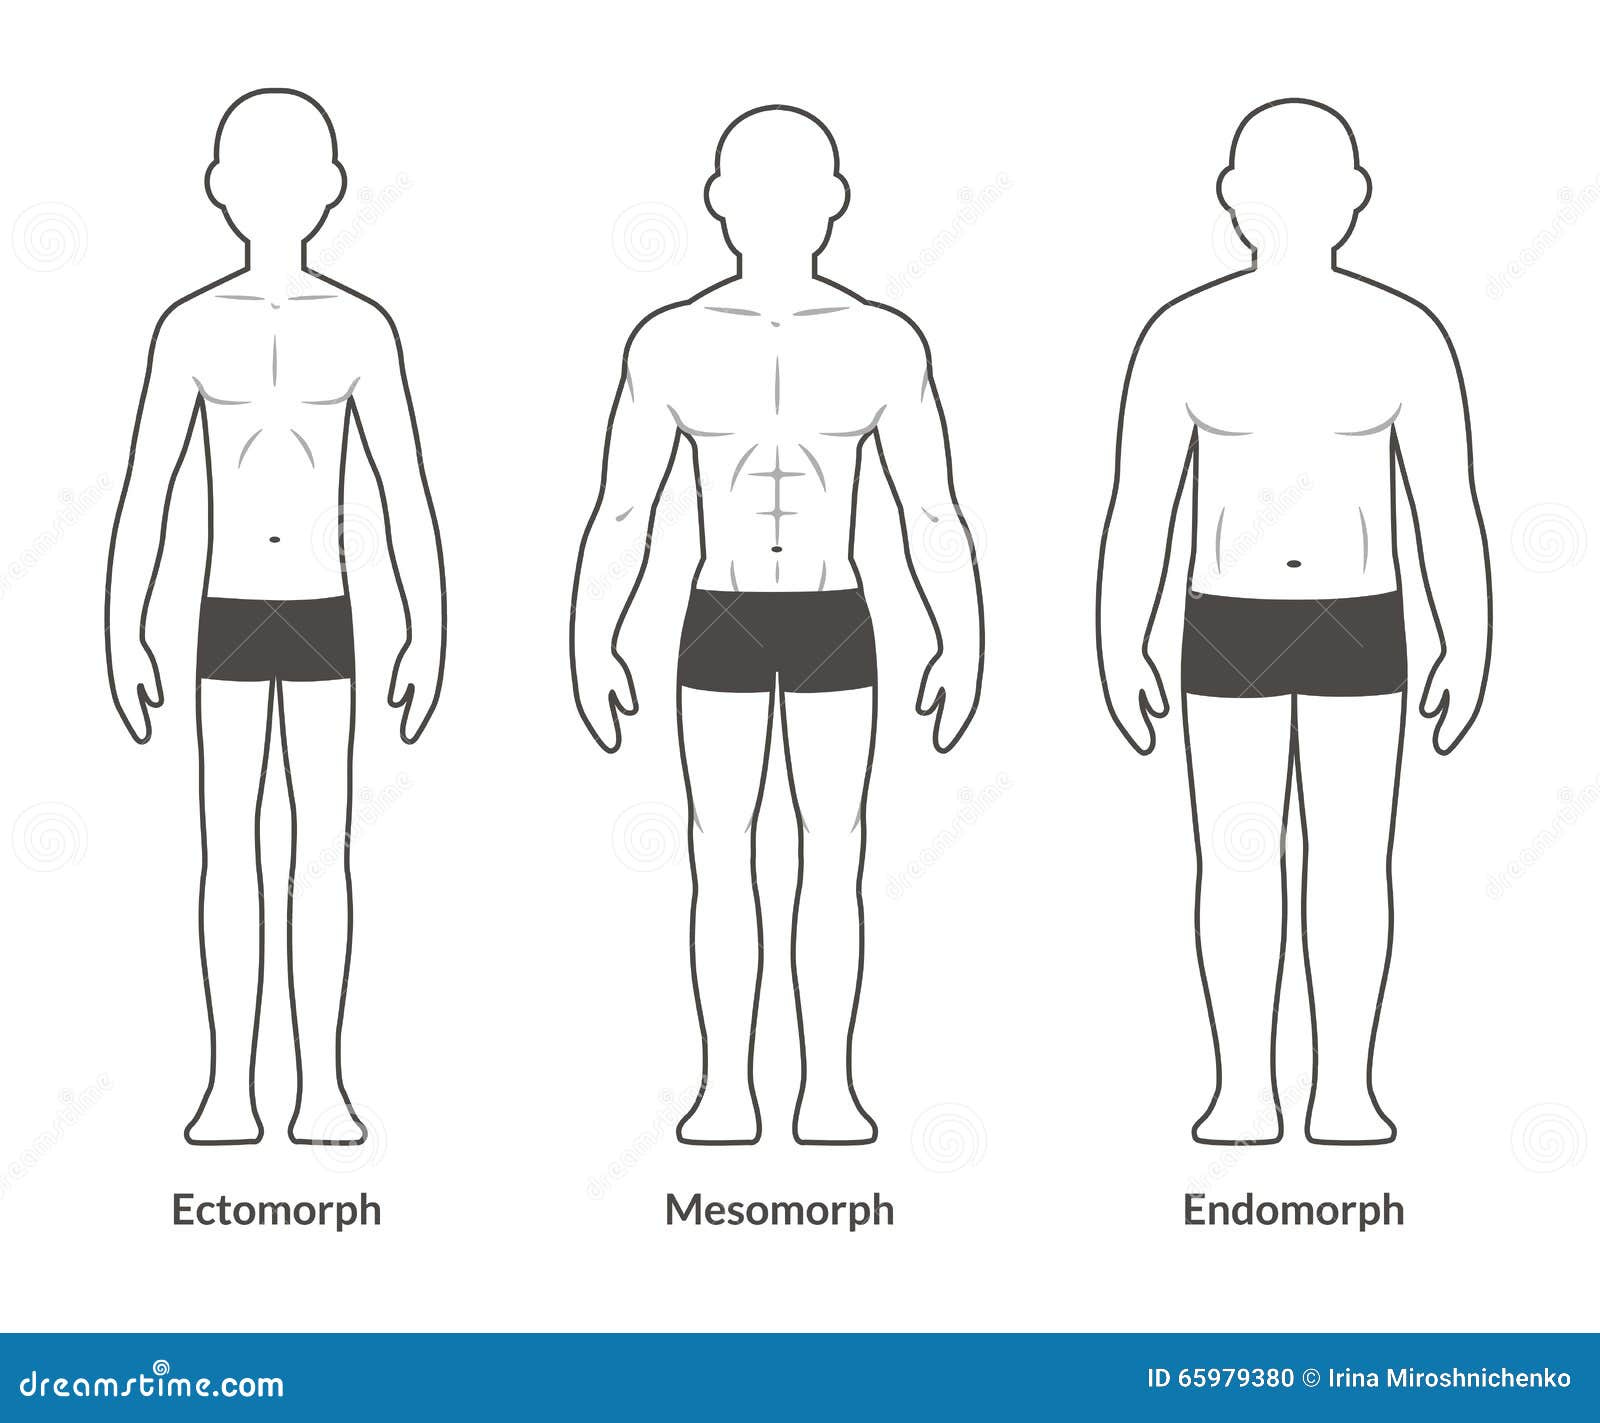 guy body types chart